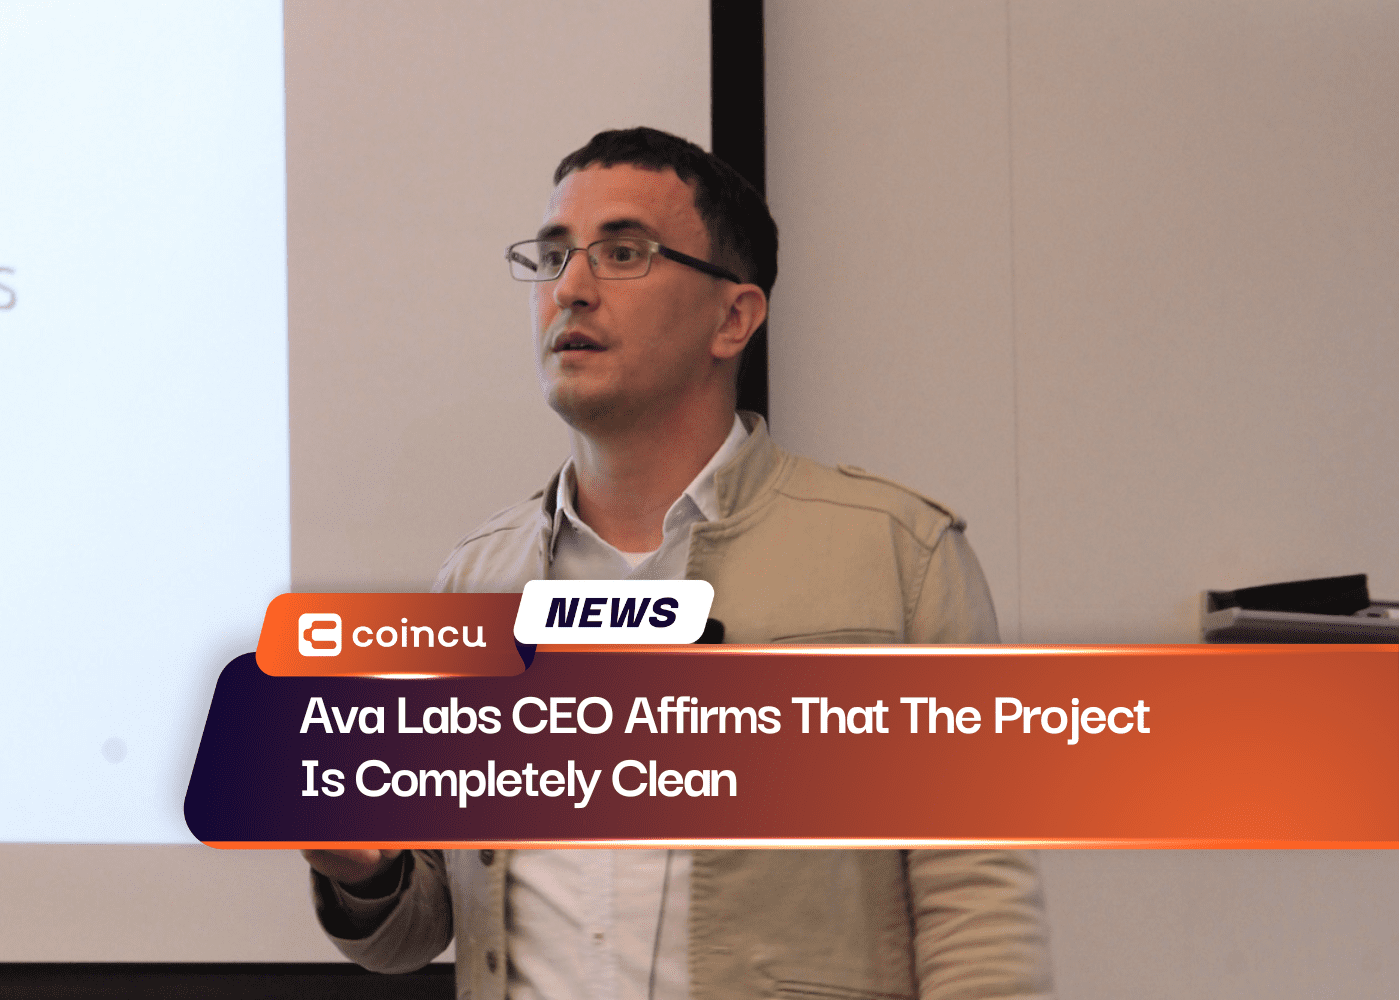 Ava Labs CEO Affirms That The Project Is Completely Clean